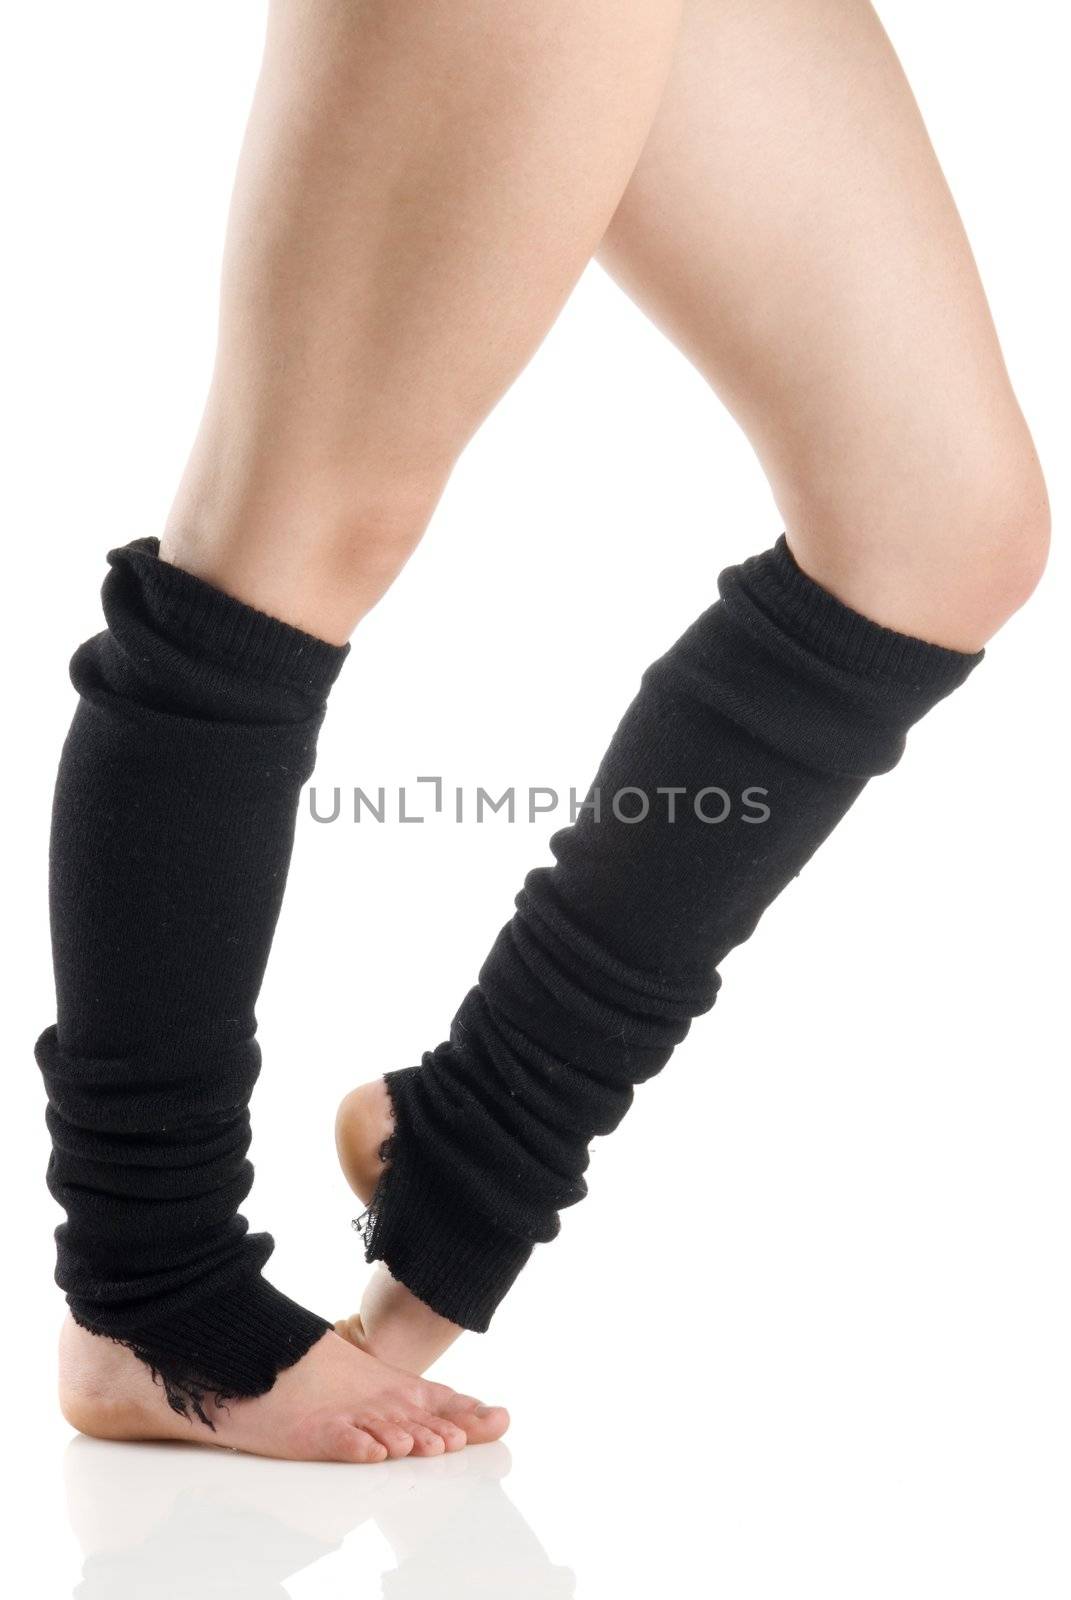 legs in black knee socks warming up